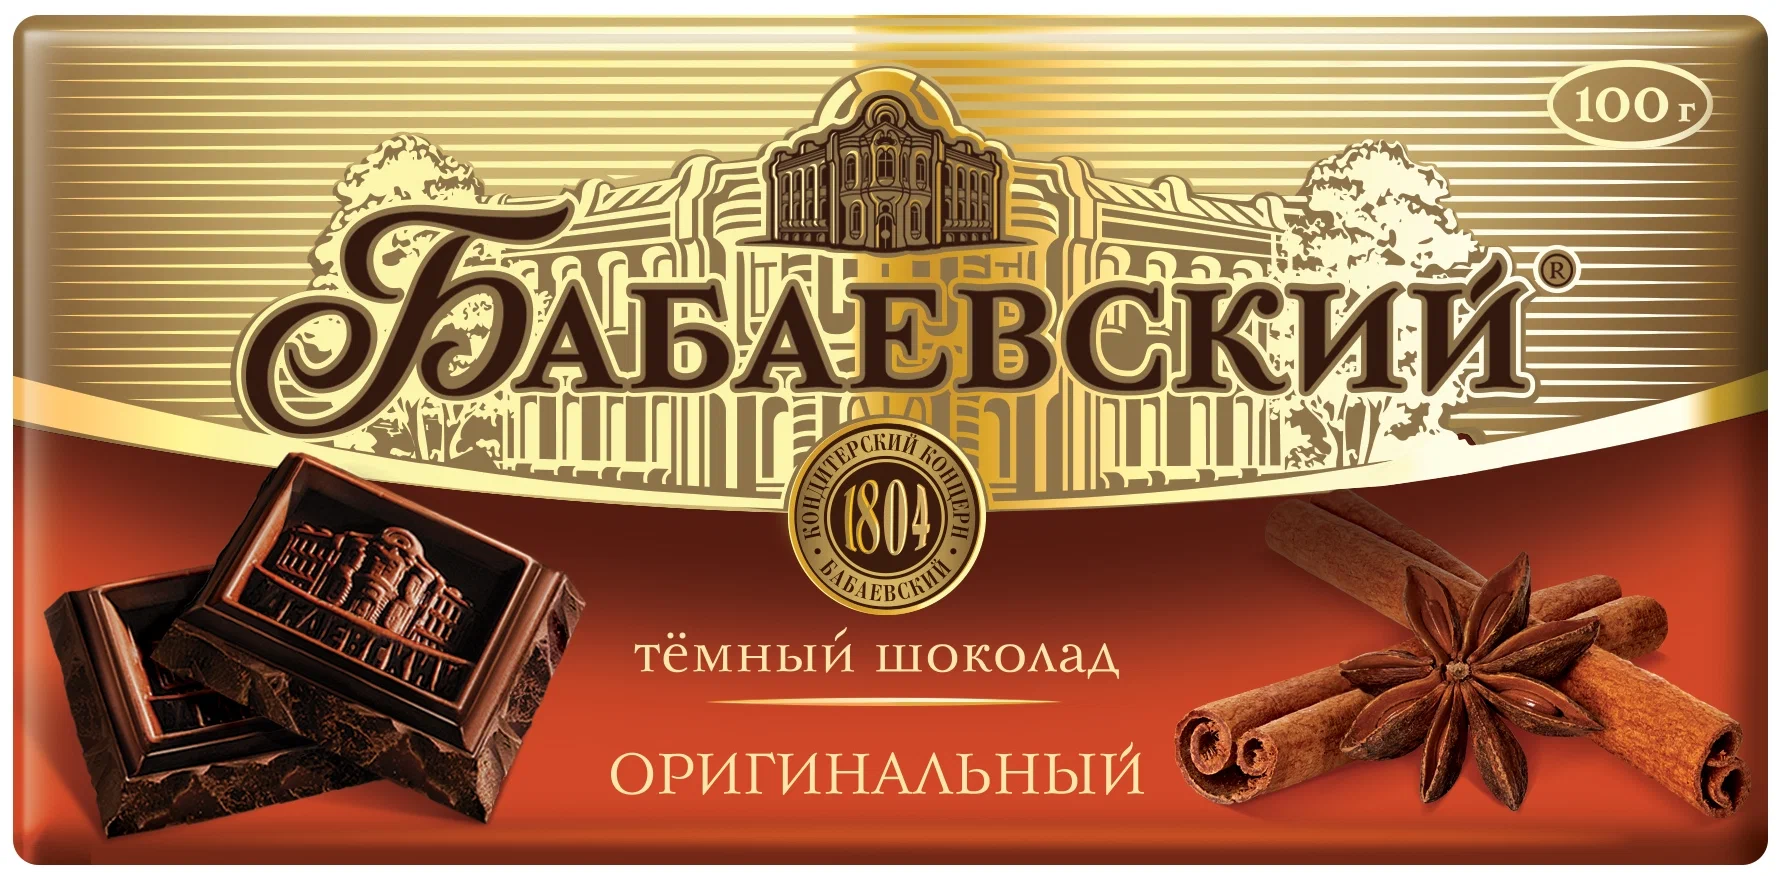 Бабаевский "Оригинальный" - вид шоколада: темный